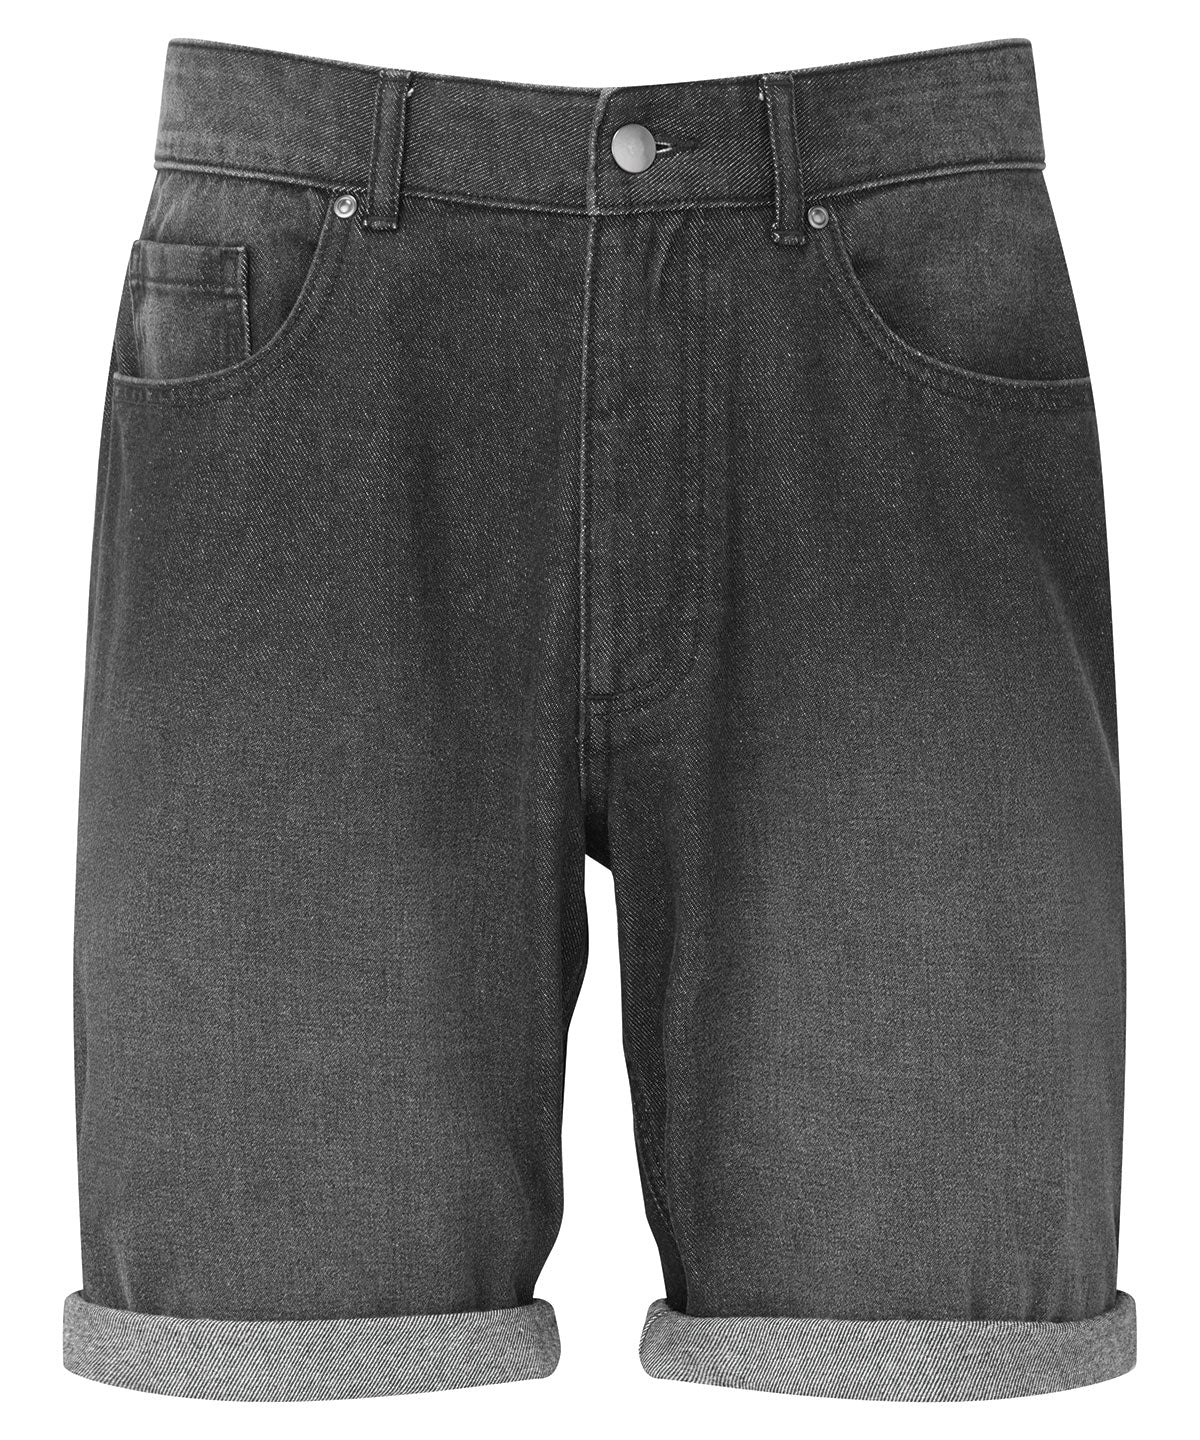 WB908 Men’s Denim Shorts